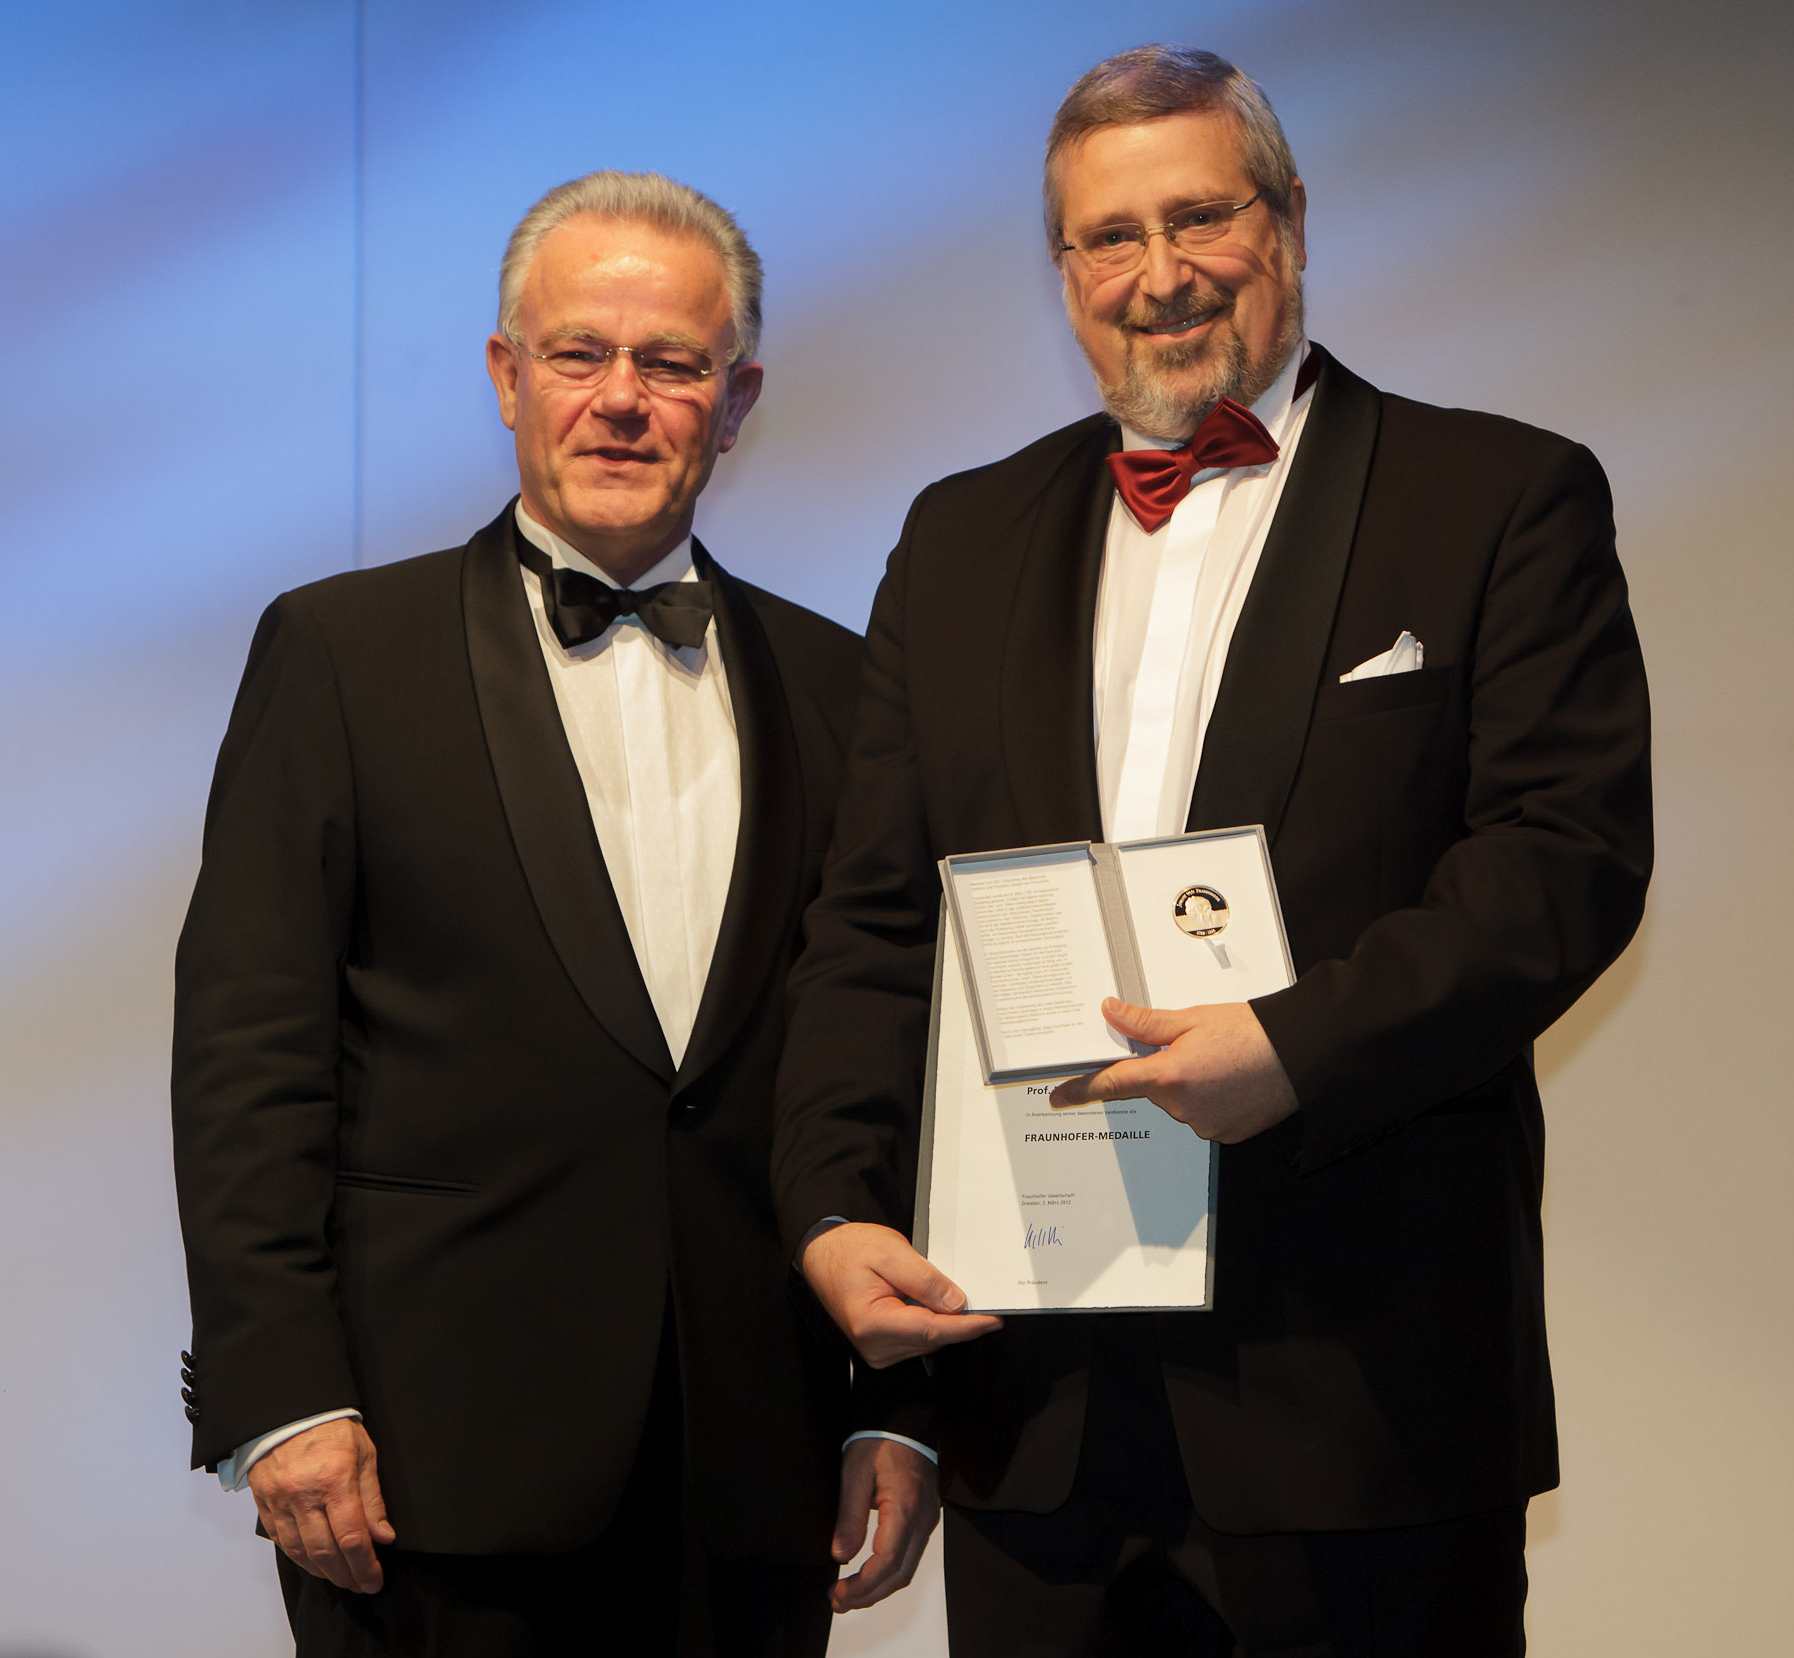 Im Rahmen der Feierlichkeiten '20 Jahre Fraunhofer in Dresden' erhielt Professor Eckhard Beyer (rechts) die Fraunhofer-Medaille aus den Händen des Fraunhofer-Präsidenten Professor Hans-Jörg Bullinger.